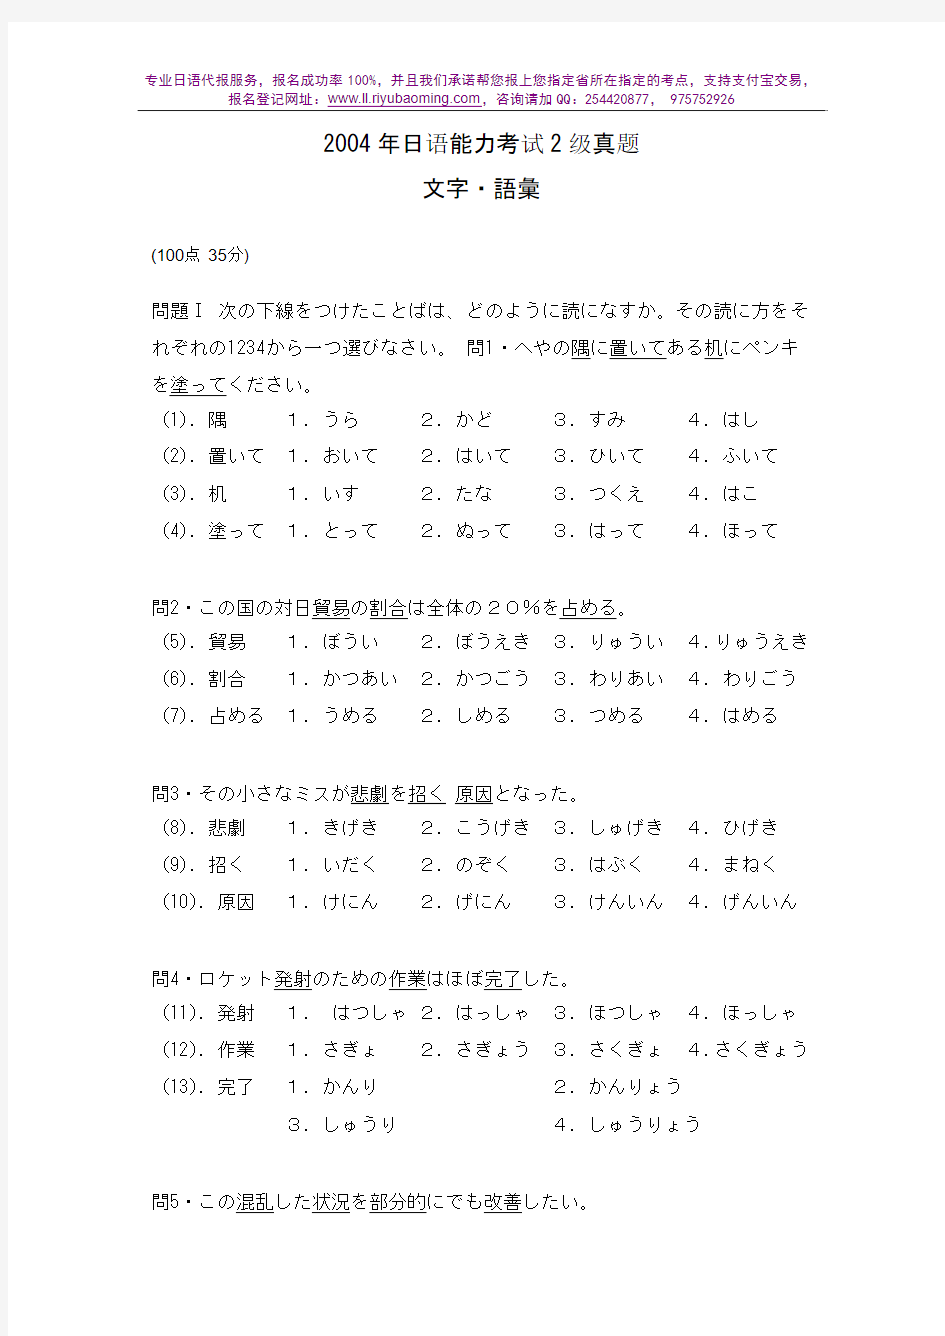 2004年日语能力考试2级真题-文字词汇